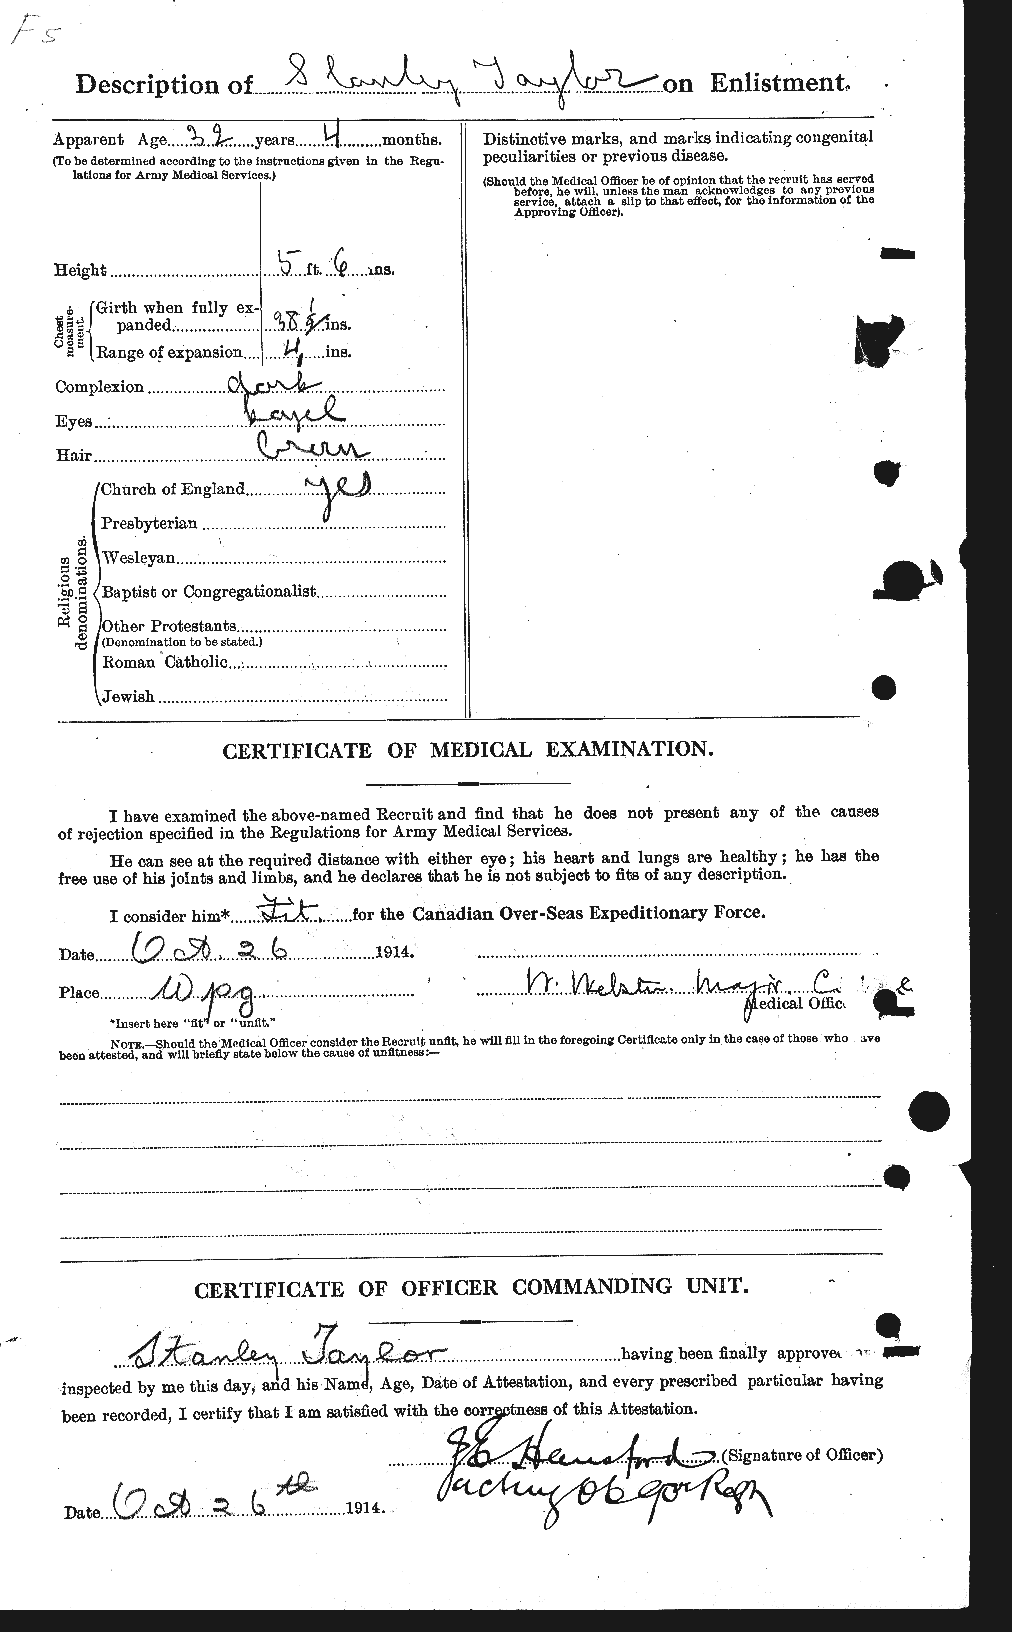 Dossiers du Personnel de la Première Guerre mondiale - CEC 627911b